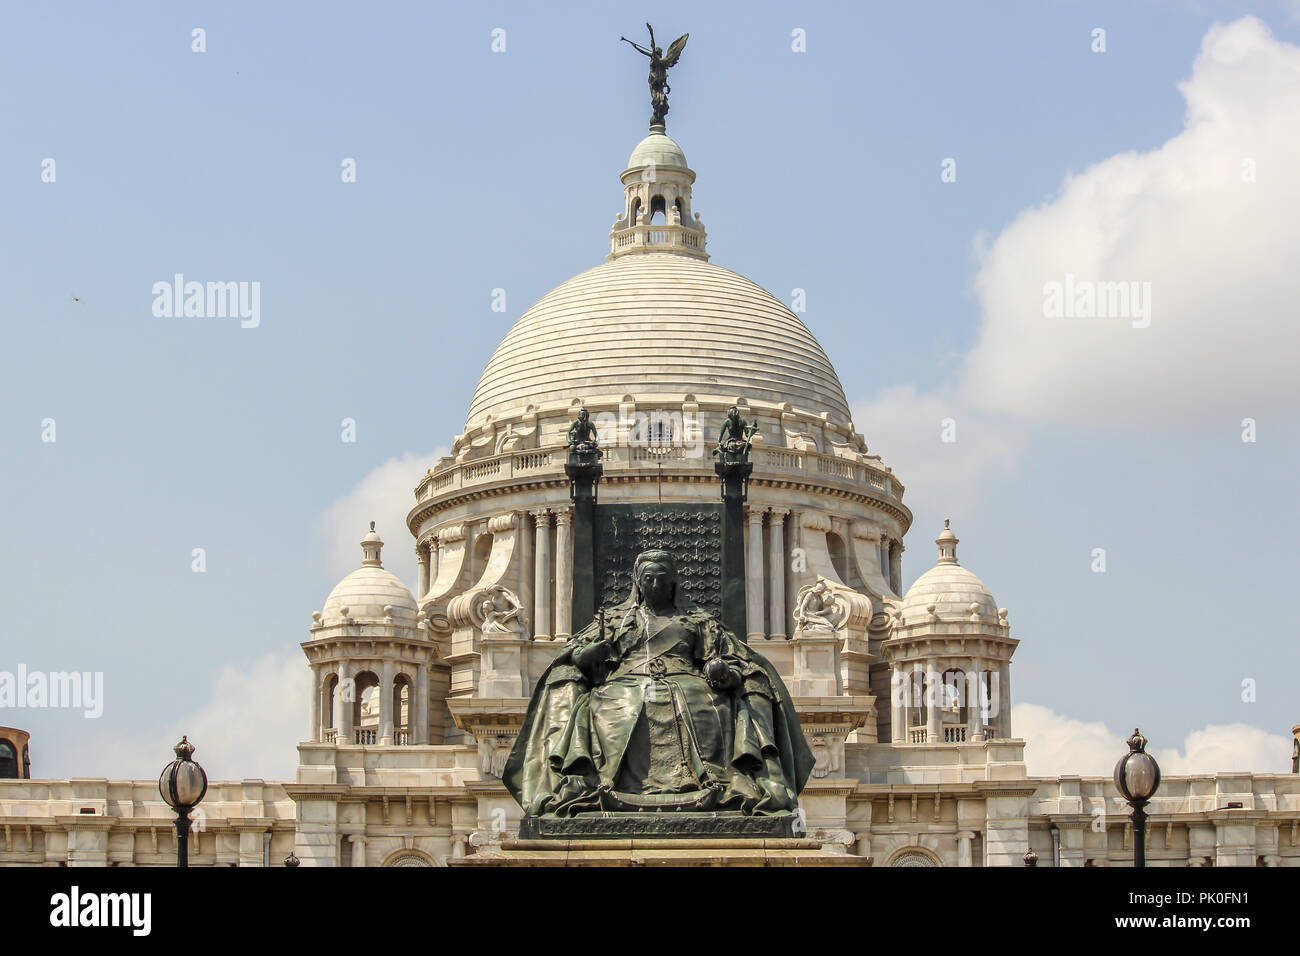 Day View of Victoria Memorial in Kolkata Stock Photo